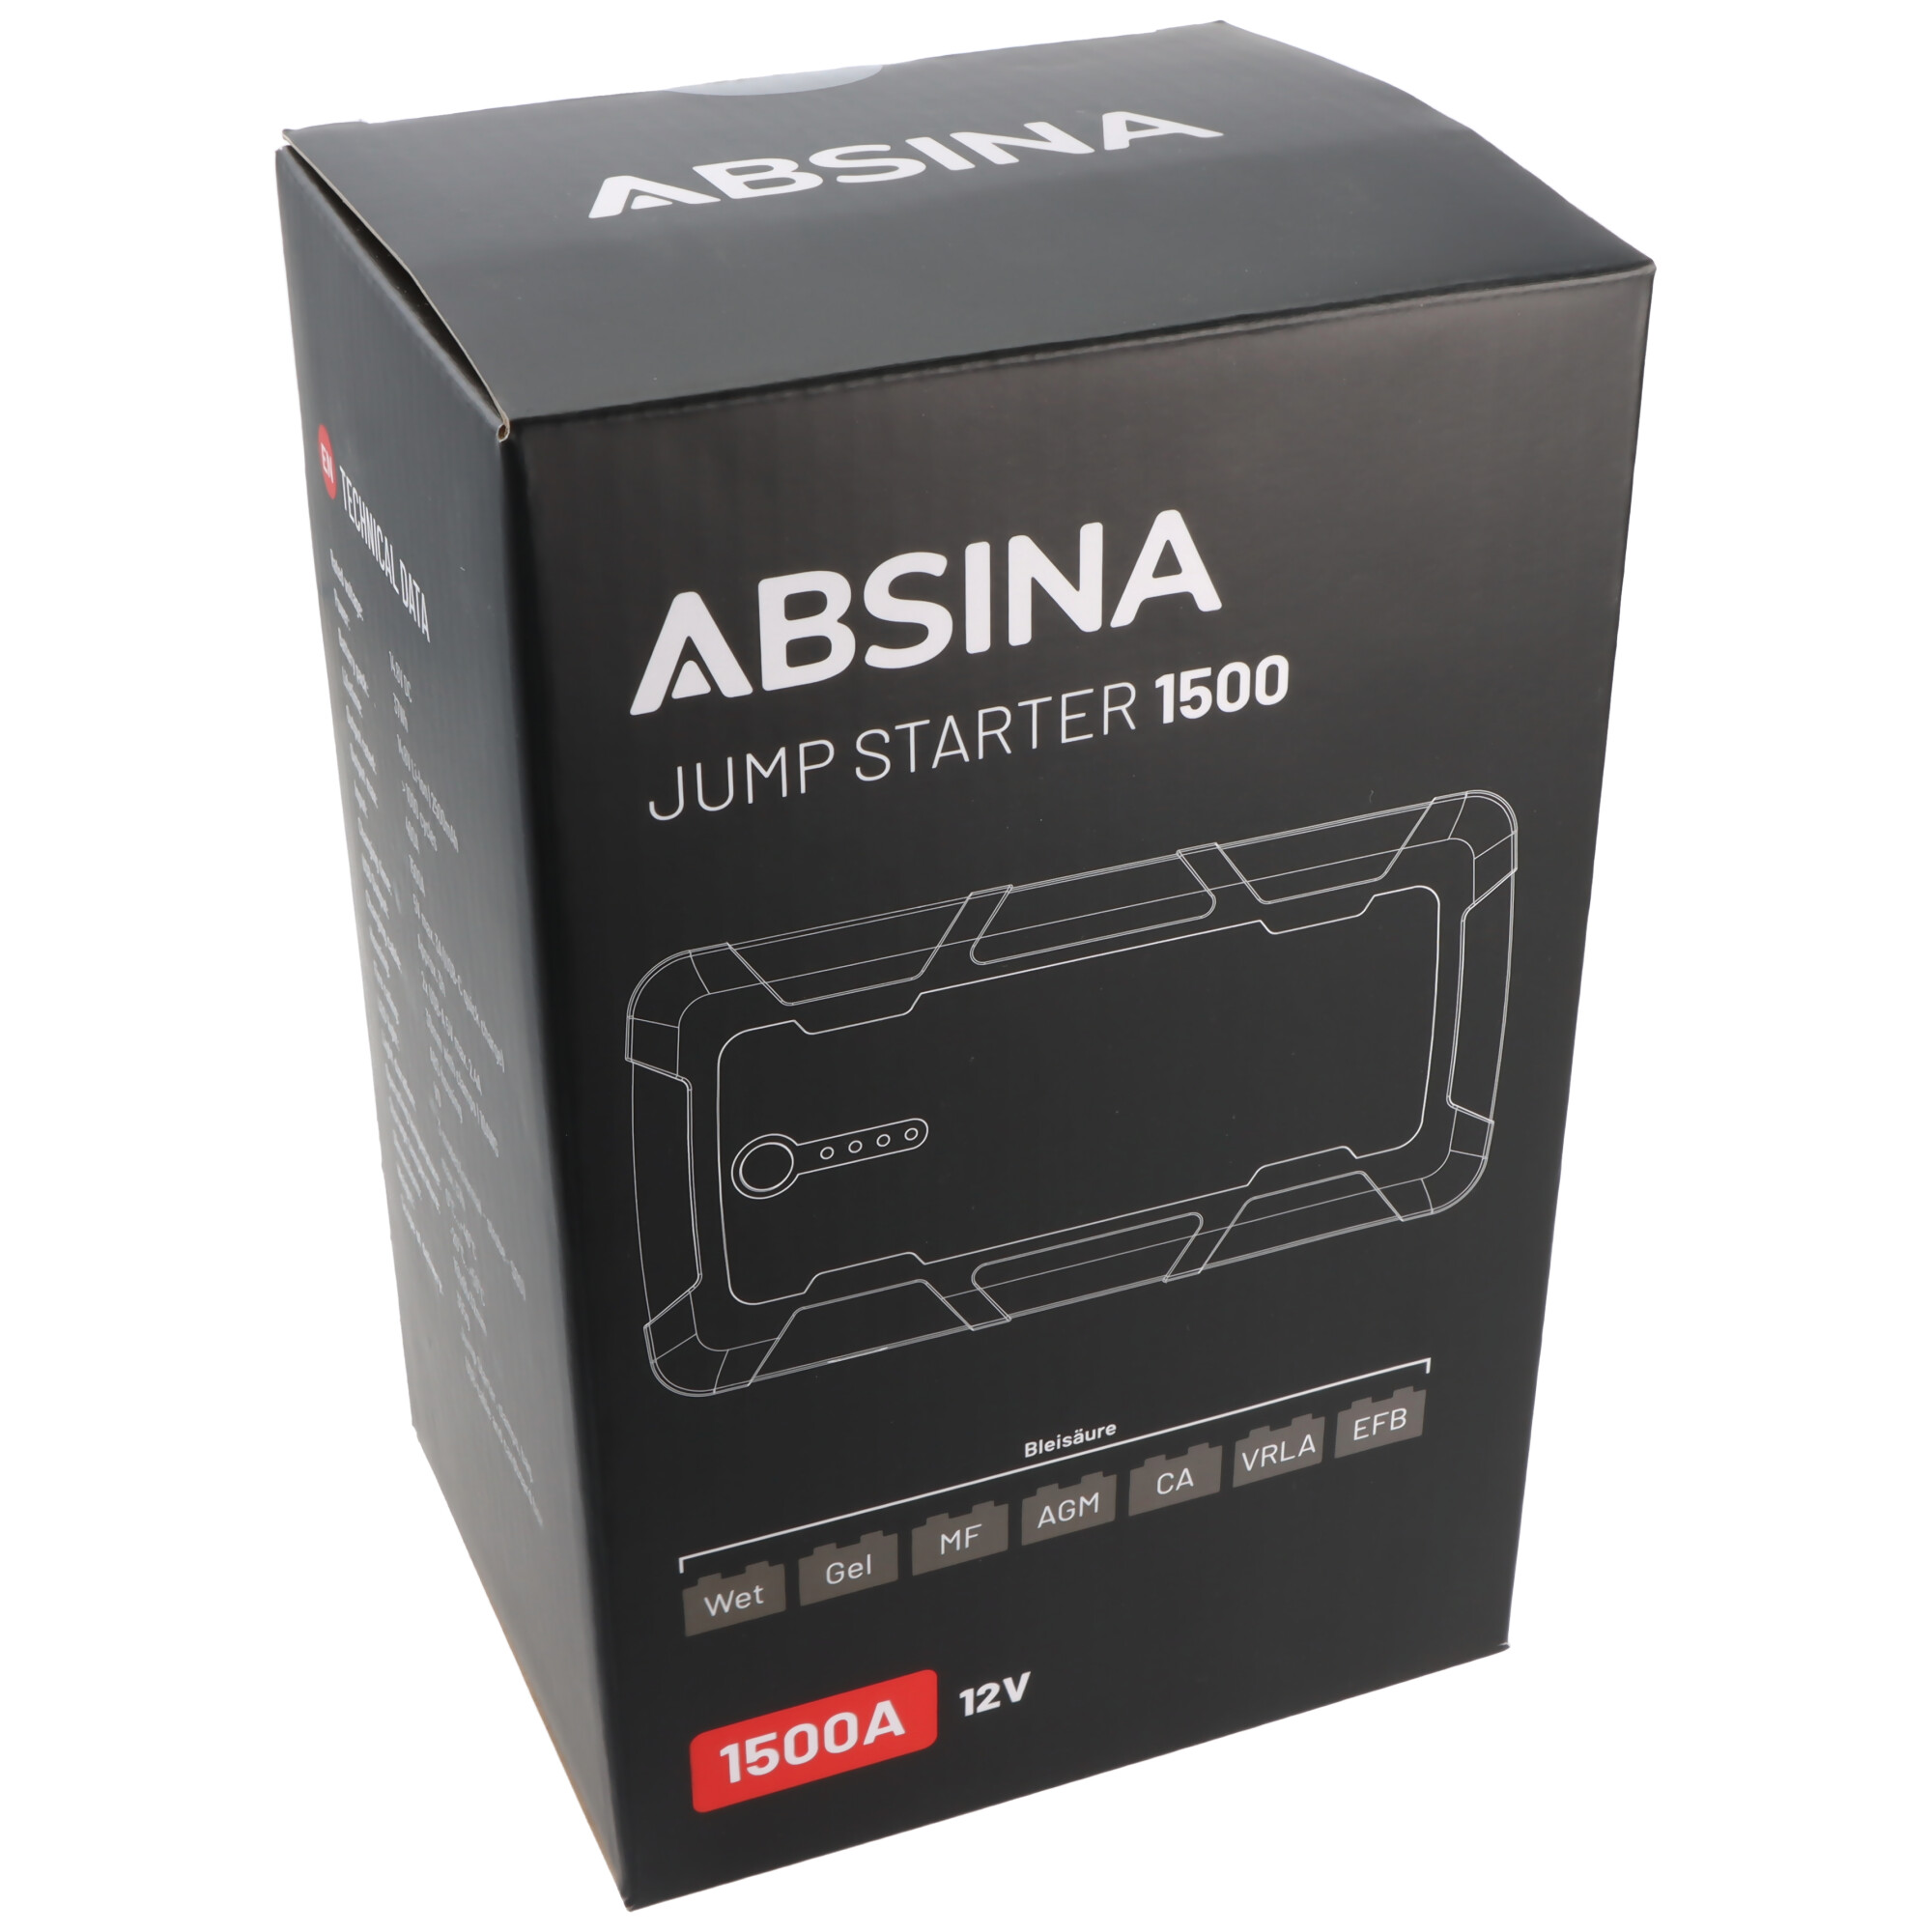 Absina Jumpstarter 1500, KFZ-Starthilfe-Powerakku mit Powerbank-Funktion und LED-Licht, ideal für PKW, Motorrad, Boot